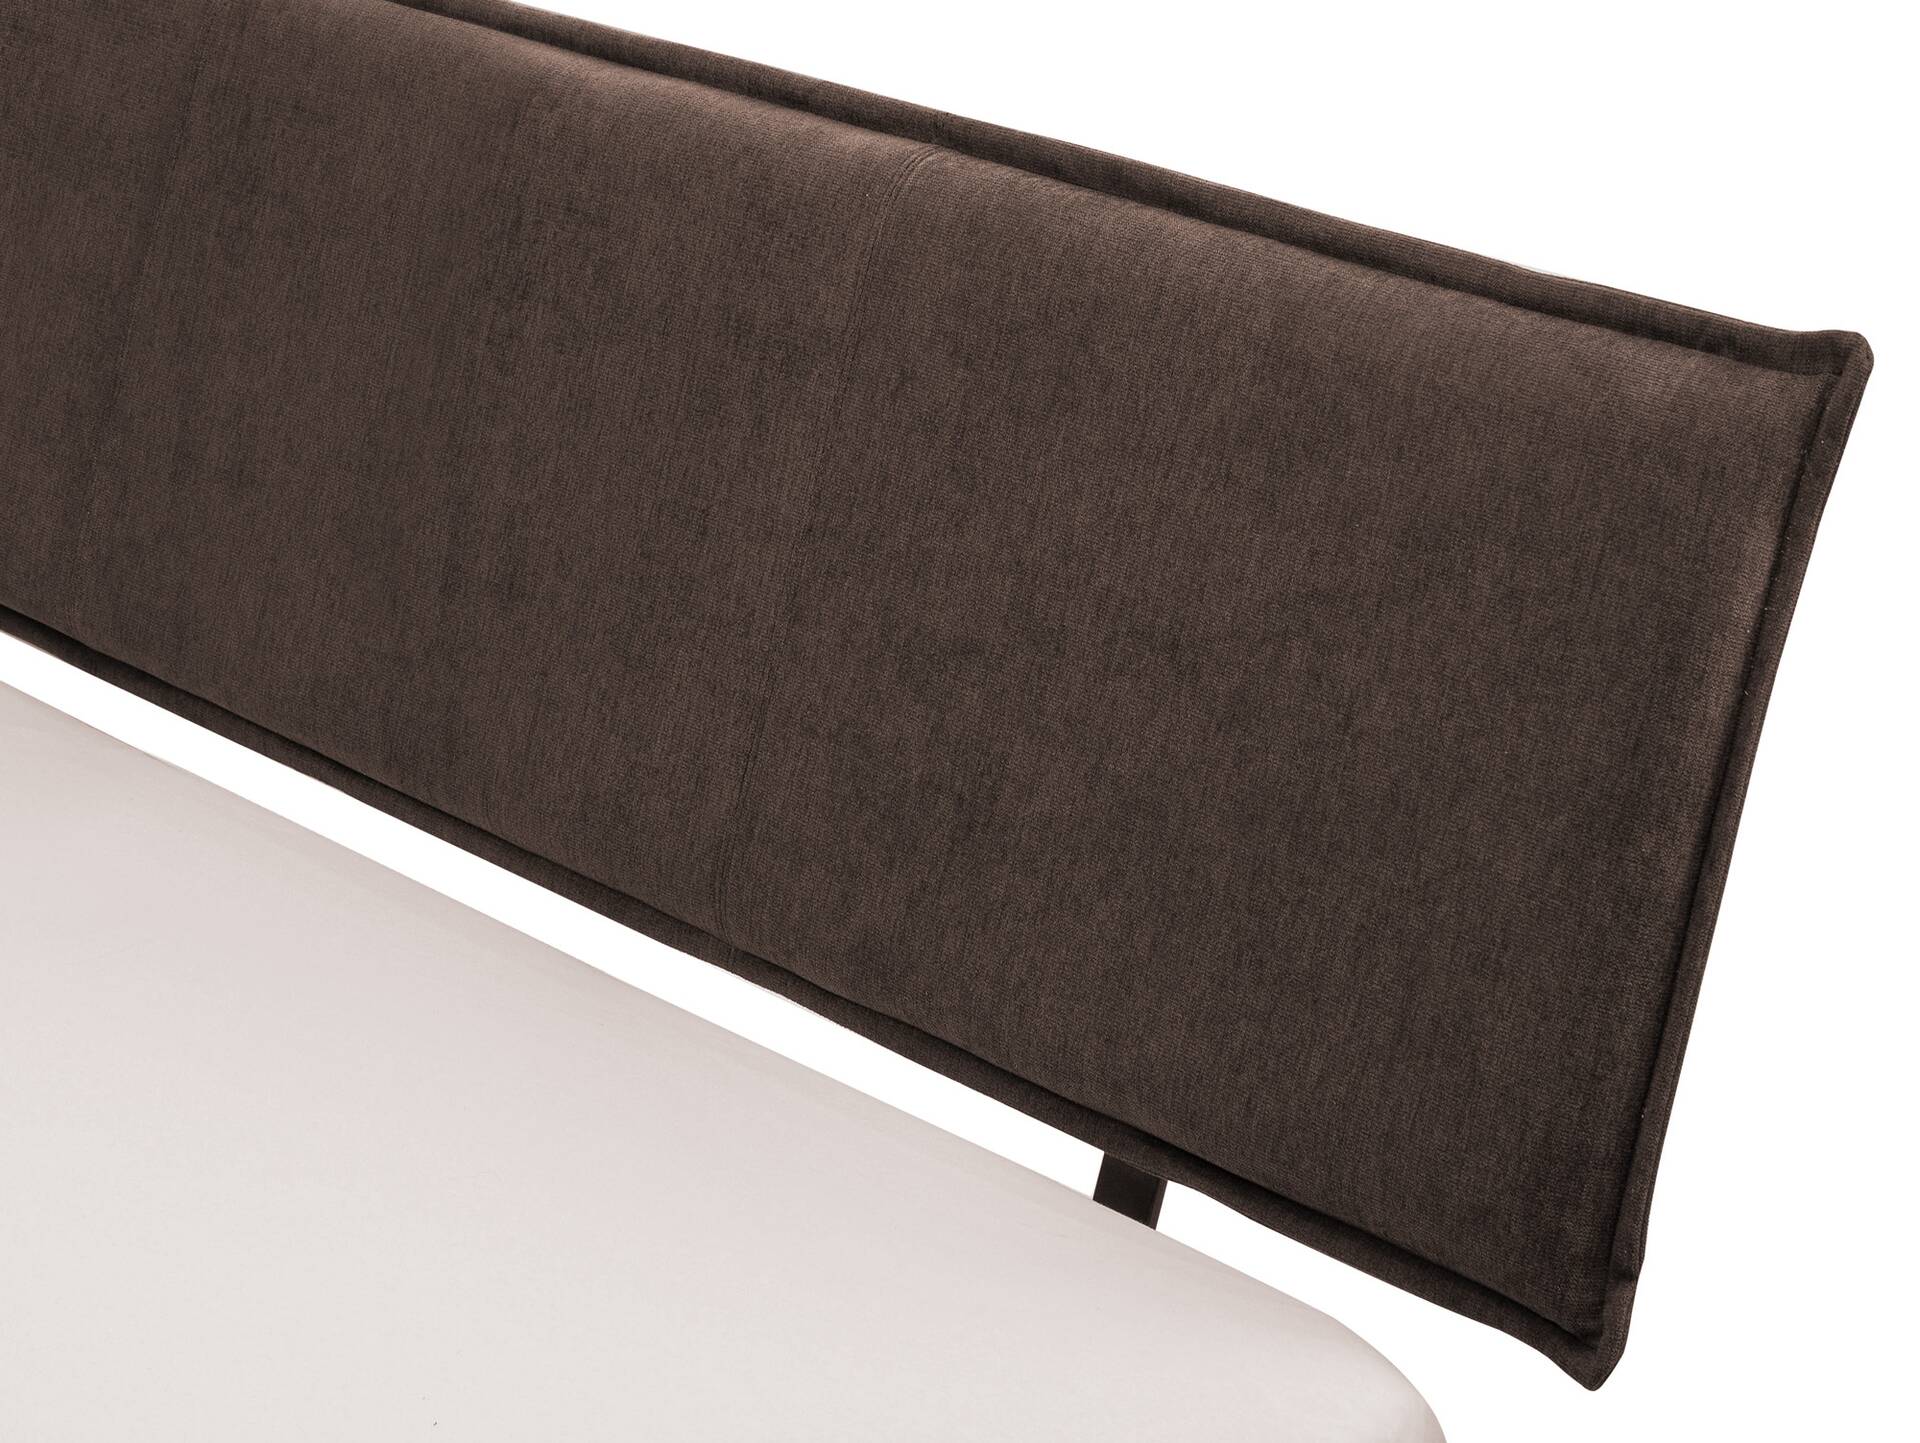 CORDINO 4-Fuß-Bett aus Eiche mit Polster-Kopfteil, Material Massivholz 120 x 220 cm | Eiche lackiert | Stoff Braun | gebürstet